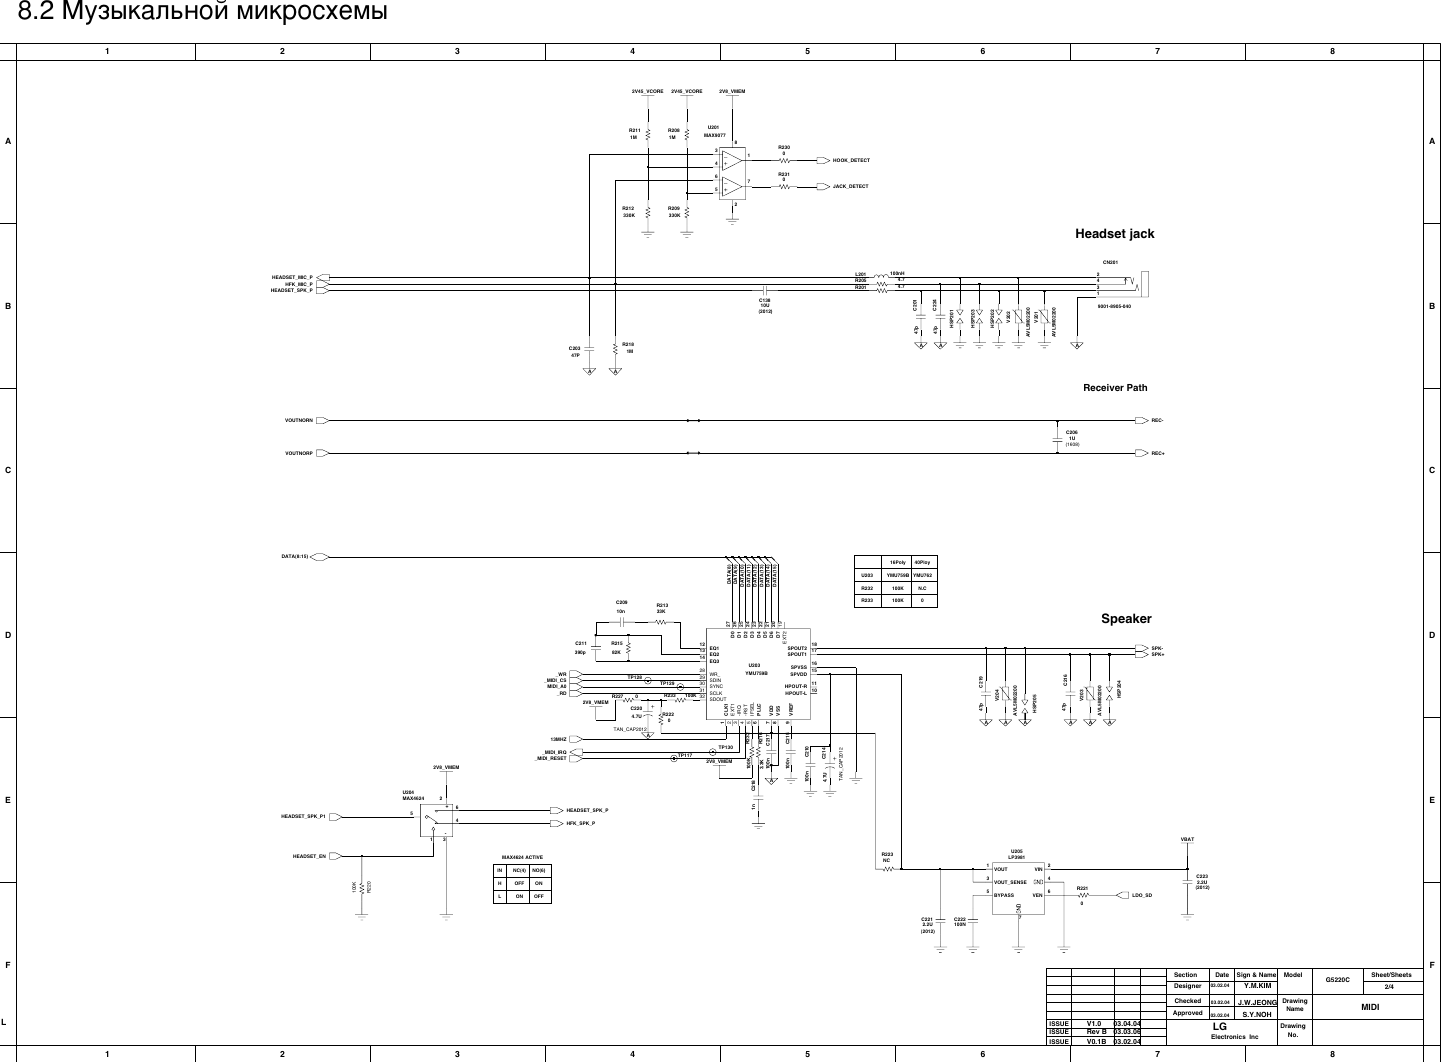 Page 2 of 7 - LG G5220C - Schematics. Www.s-manuals.com. Schematics